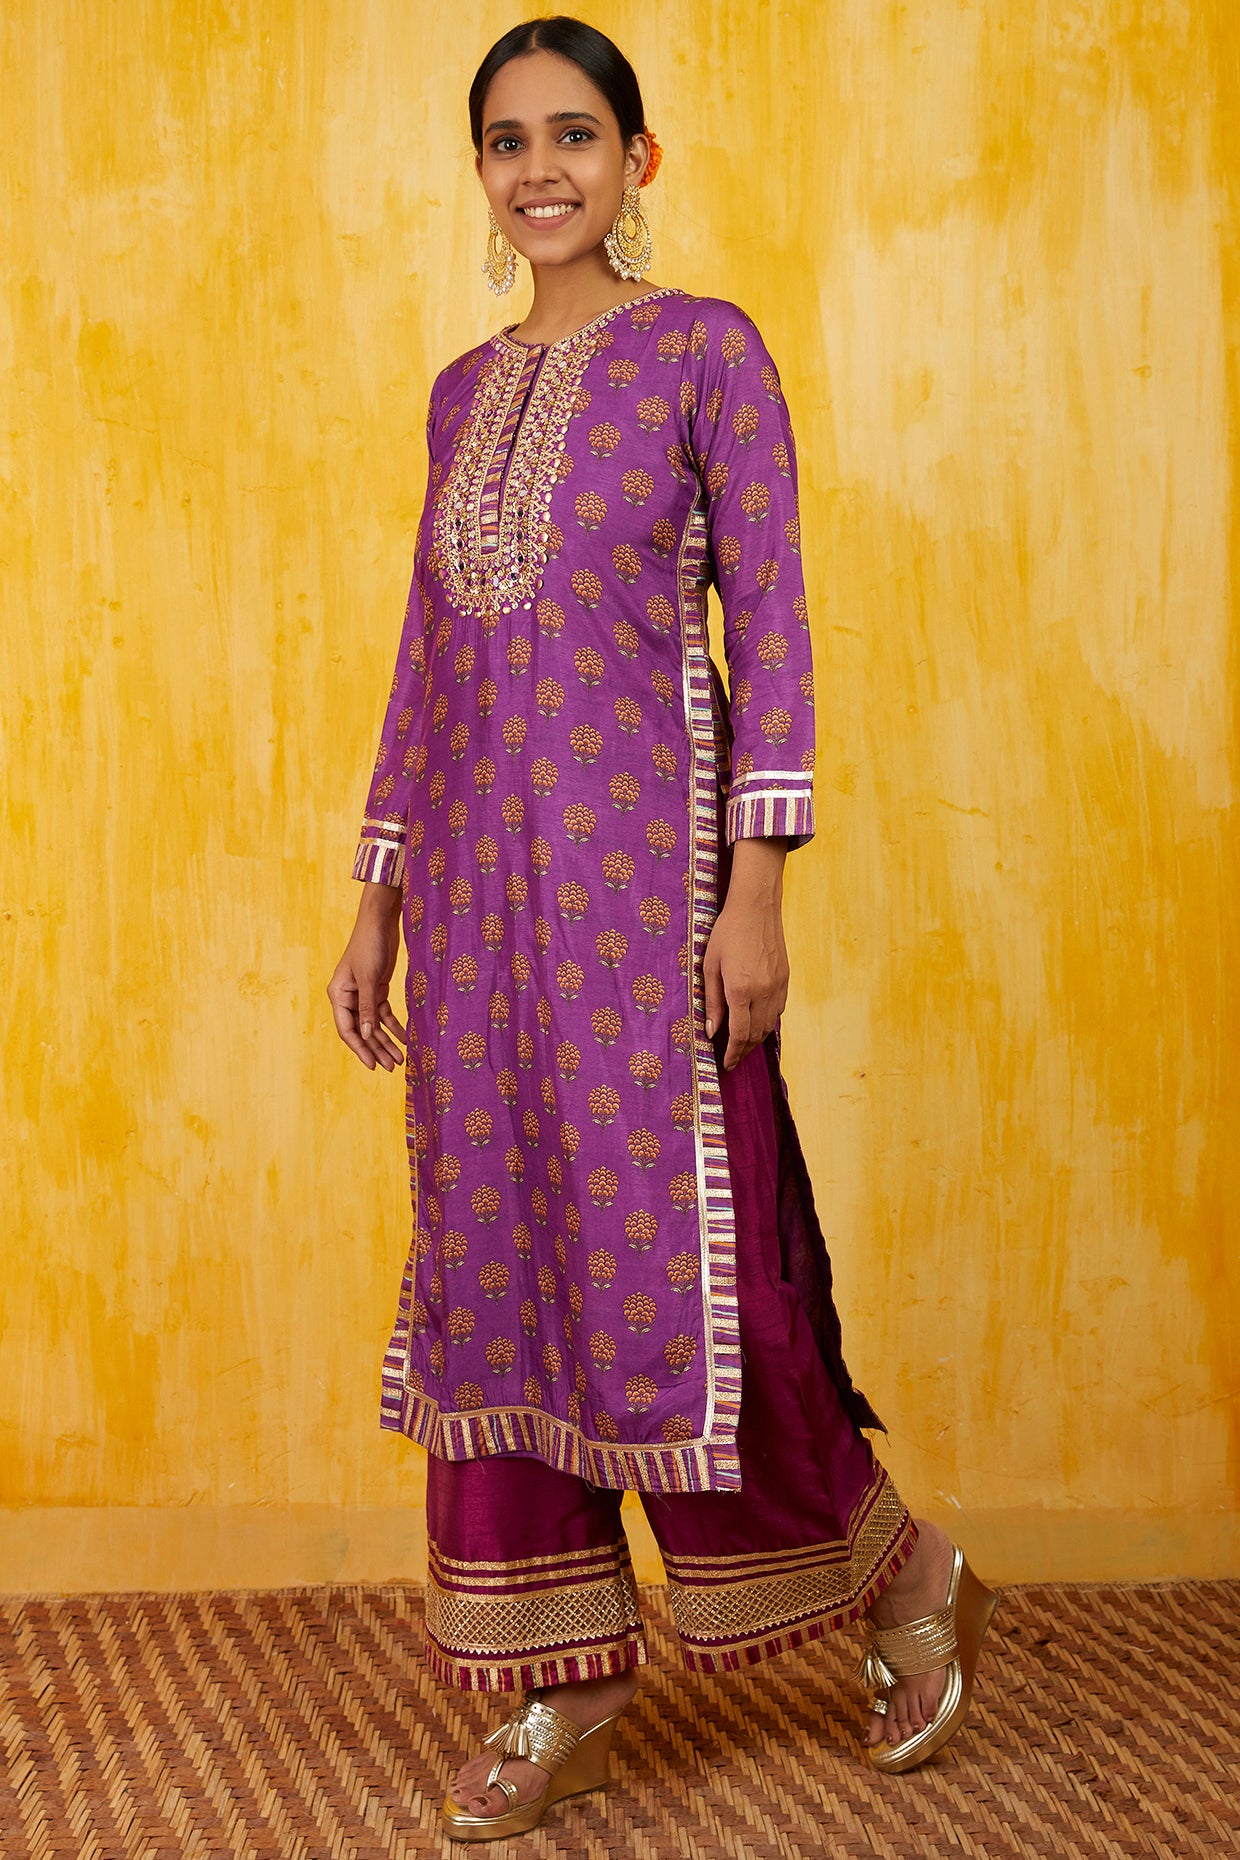 Gopi vaid Marigold Buti Tunic with Palazzo Purple festive indian designer wear online shopping melange singapore